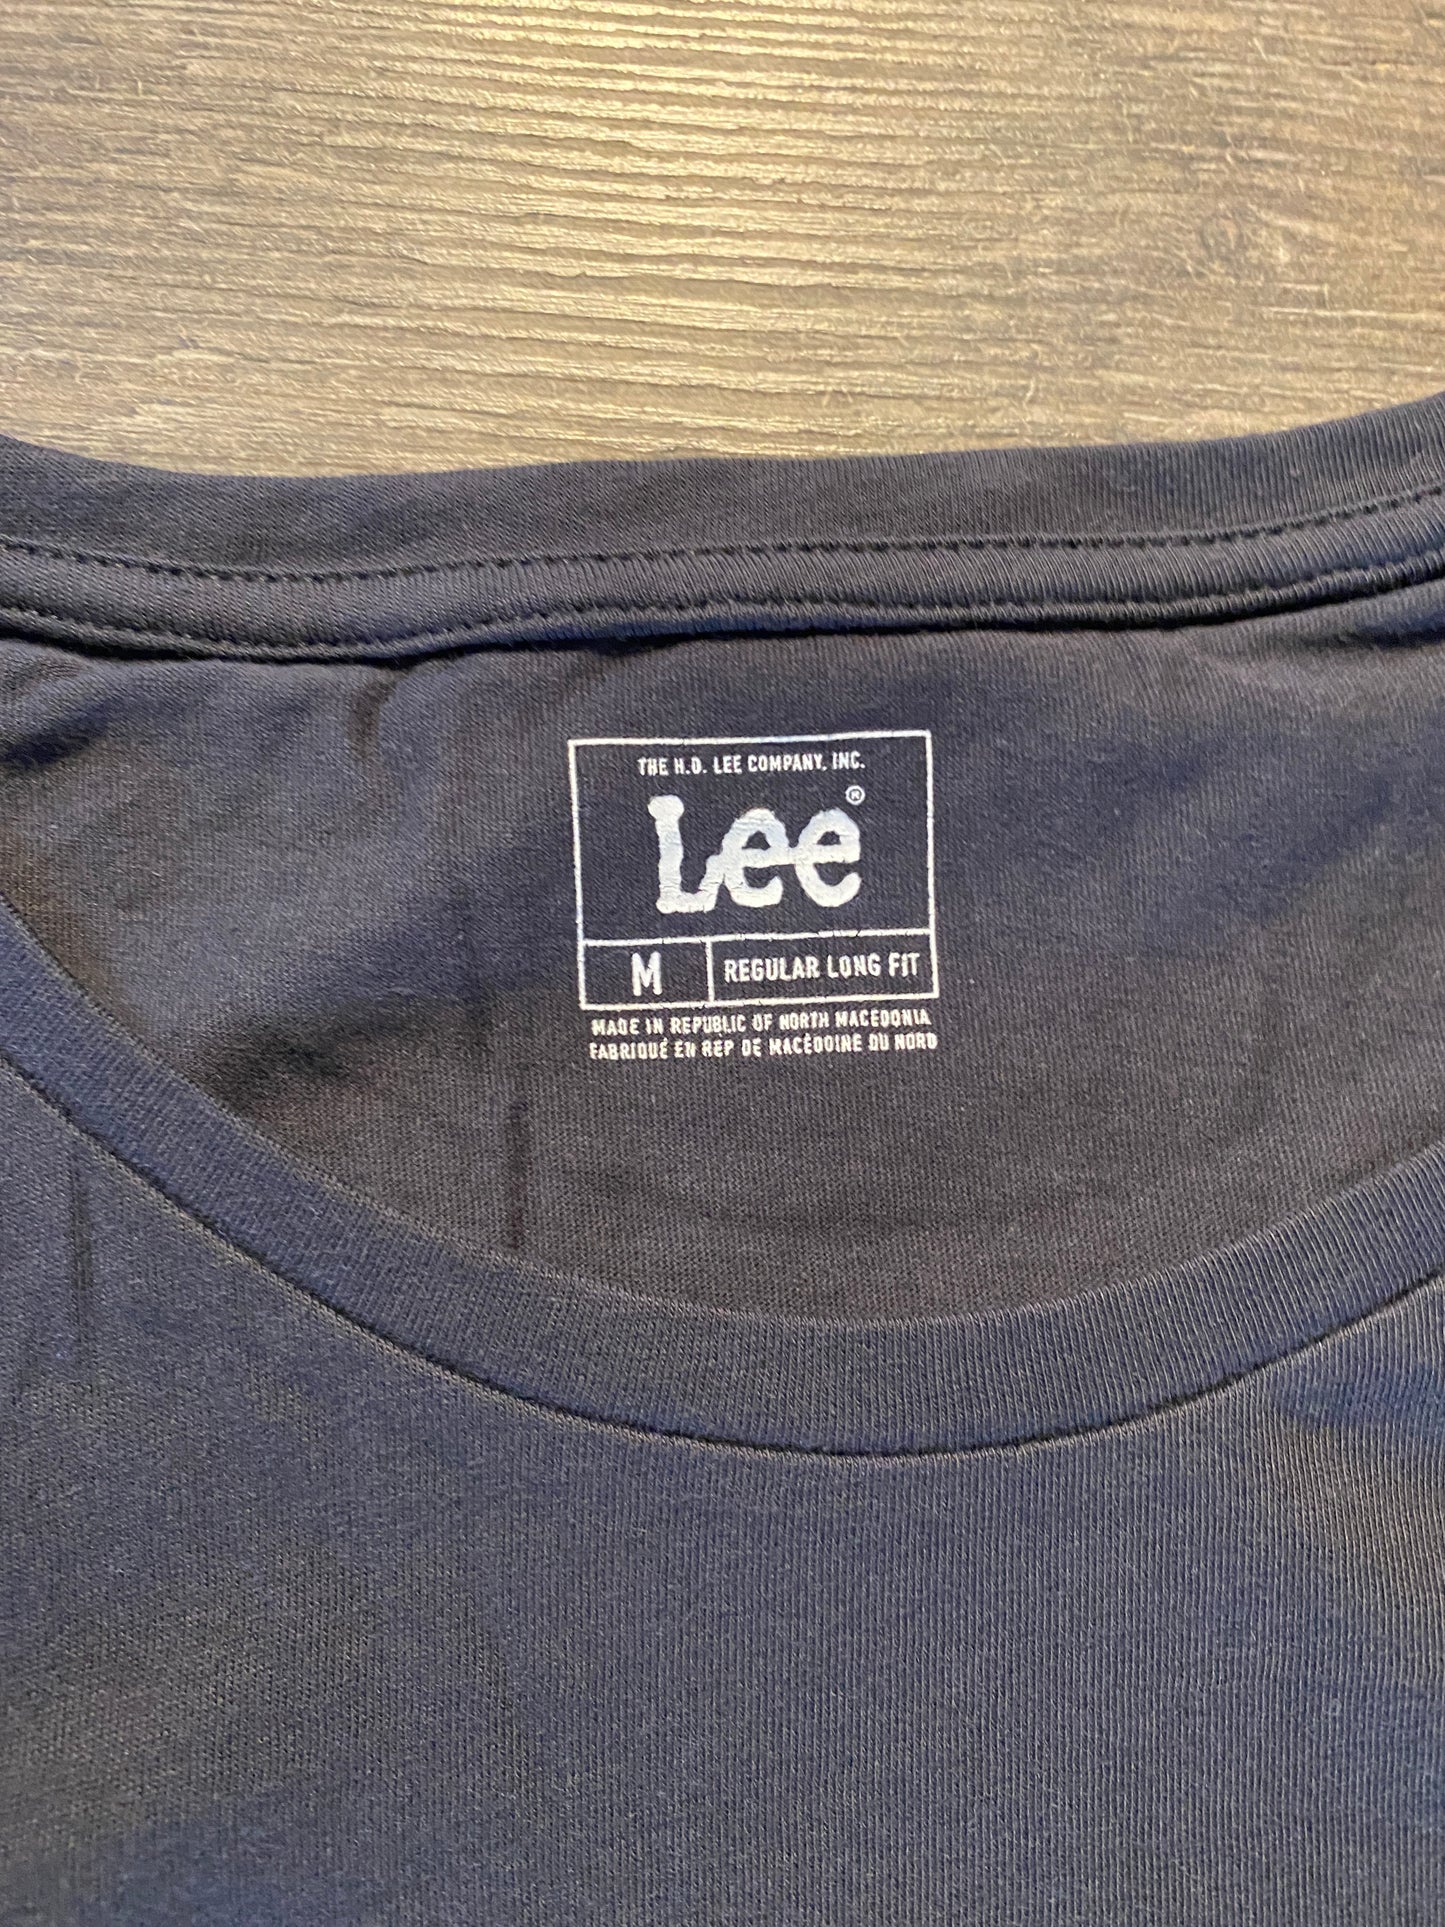 Männer T-Shirt Lee